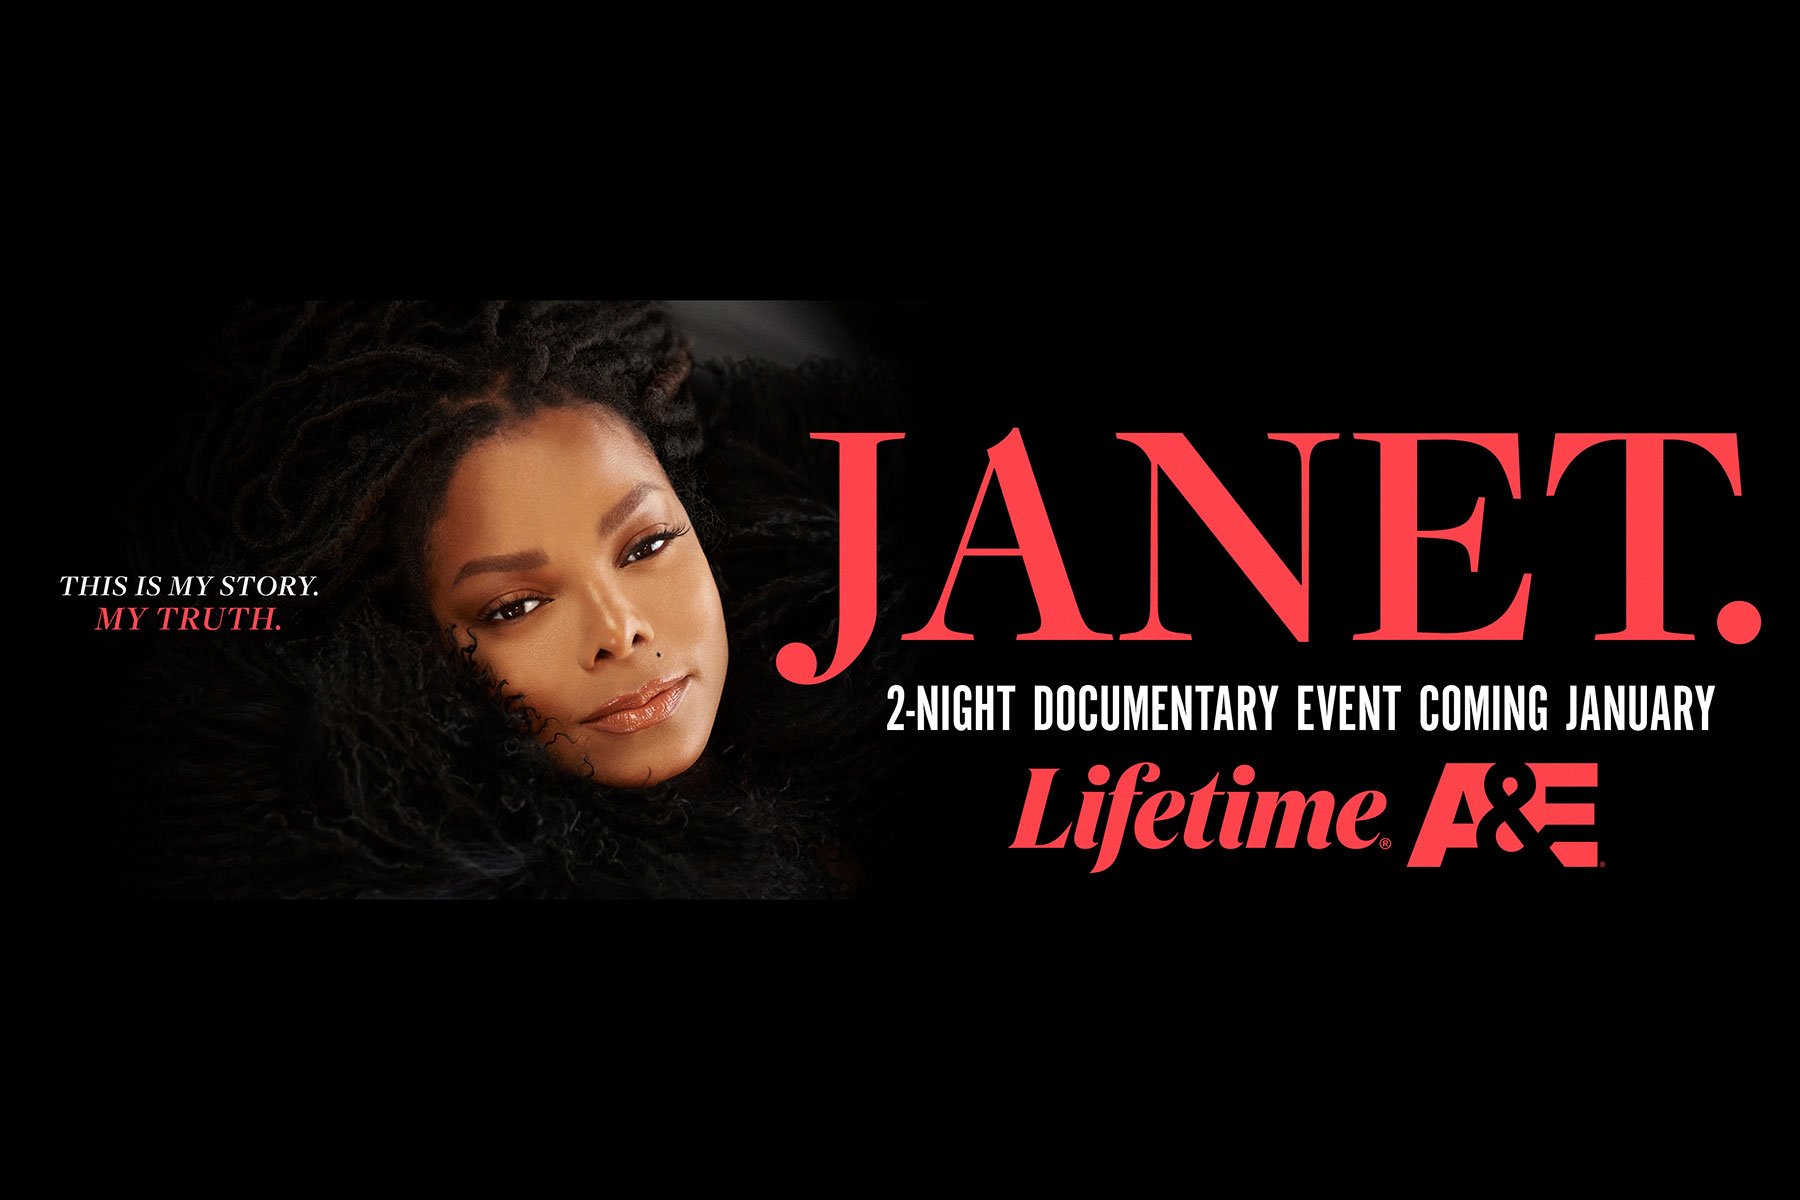  Affiche promotionnelle de Janet Jackson Doc, @DR